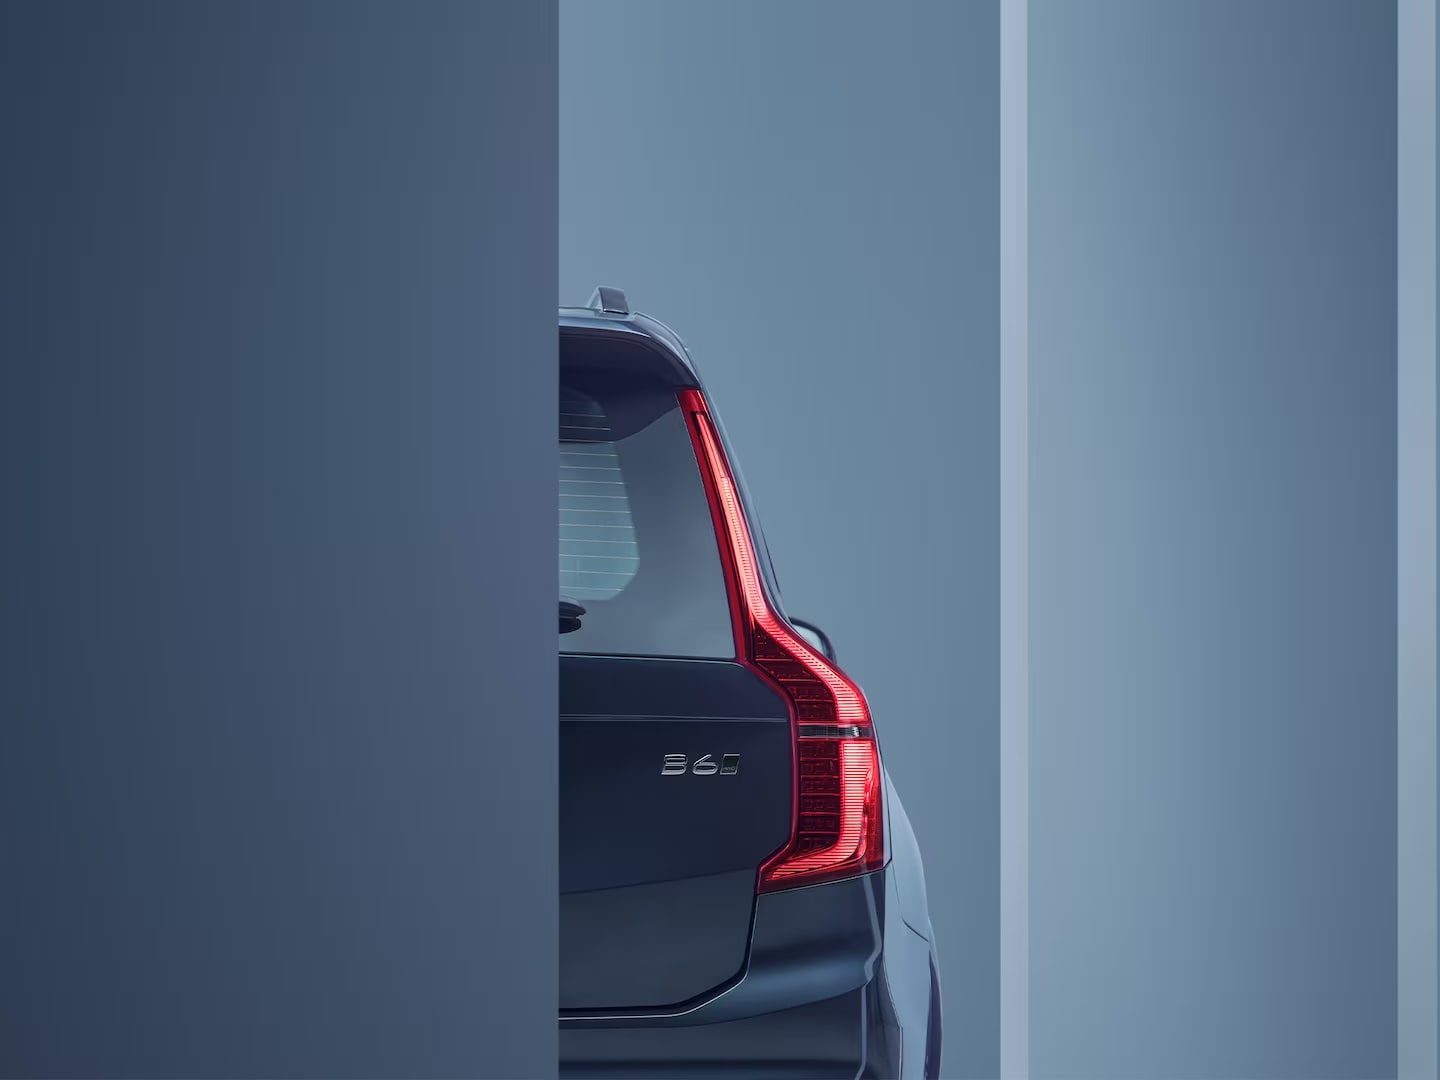 Detaliu de design al luminilor spate ale modelului Volvo XC90 mild hybrid.